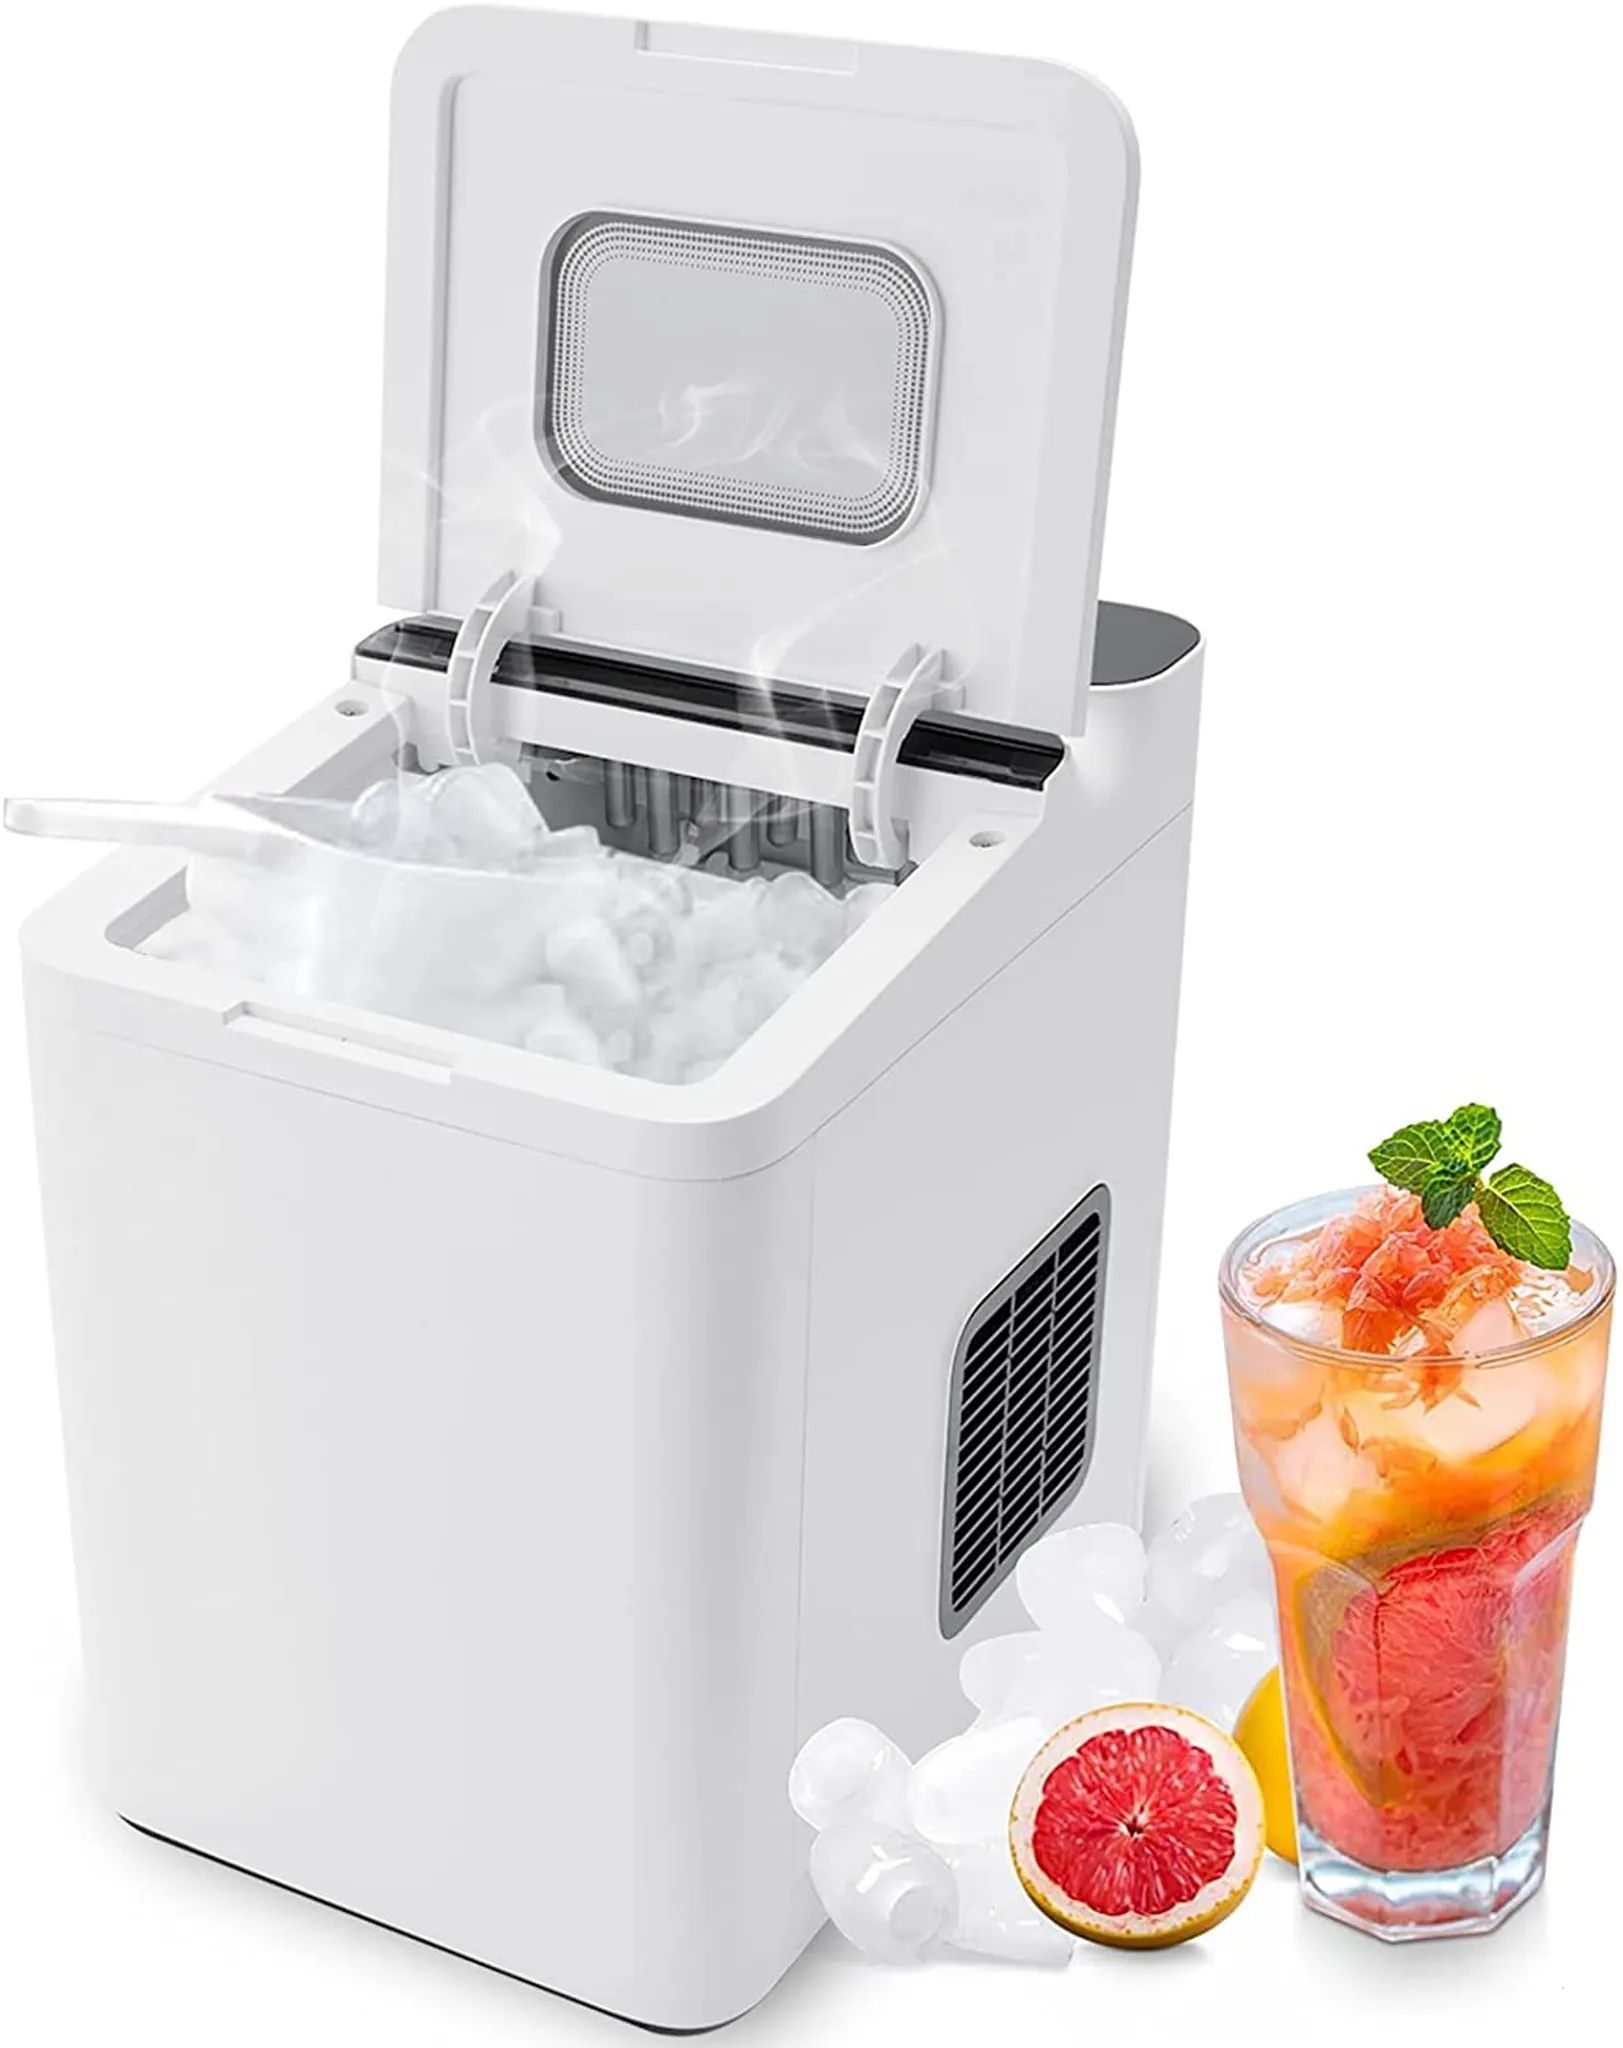 GOPLUS Elektrischer Eiswürfelzubereiter, Ice Maker 12kg/24H, Tragbare und kompakte Eismaschine mit Selbstreinigung, 9 Würfel in 6 Minuten, mit Eiskorb und Schaufel